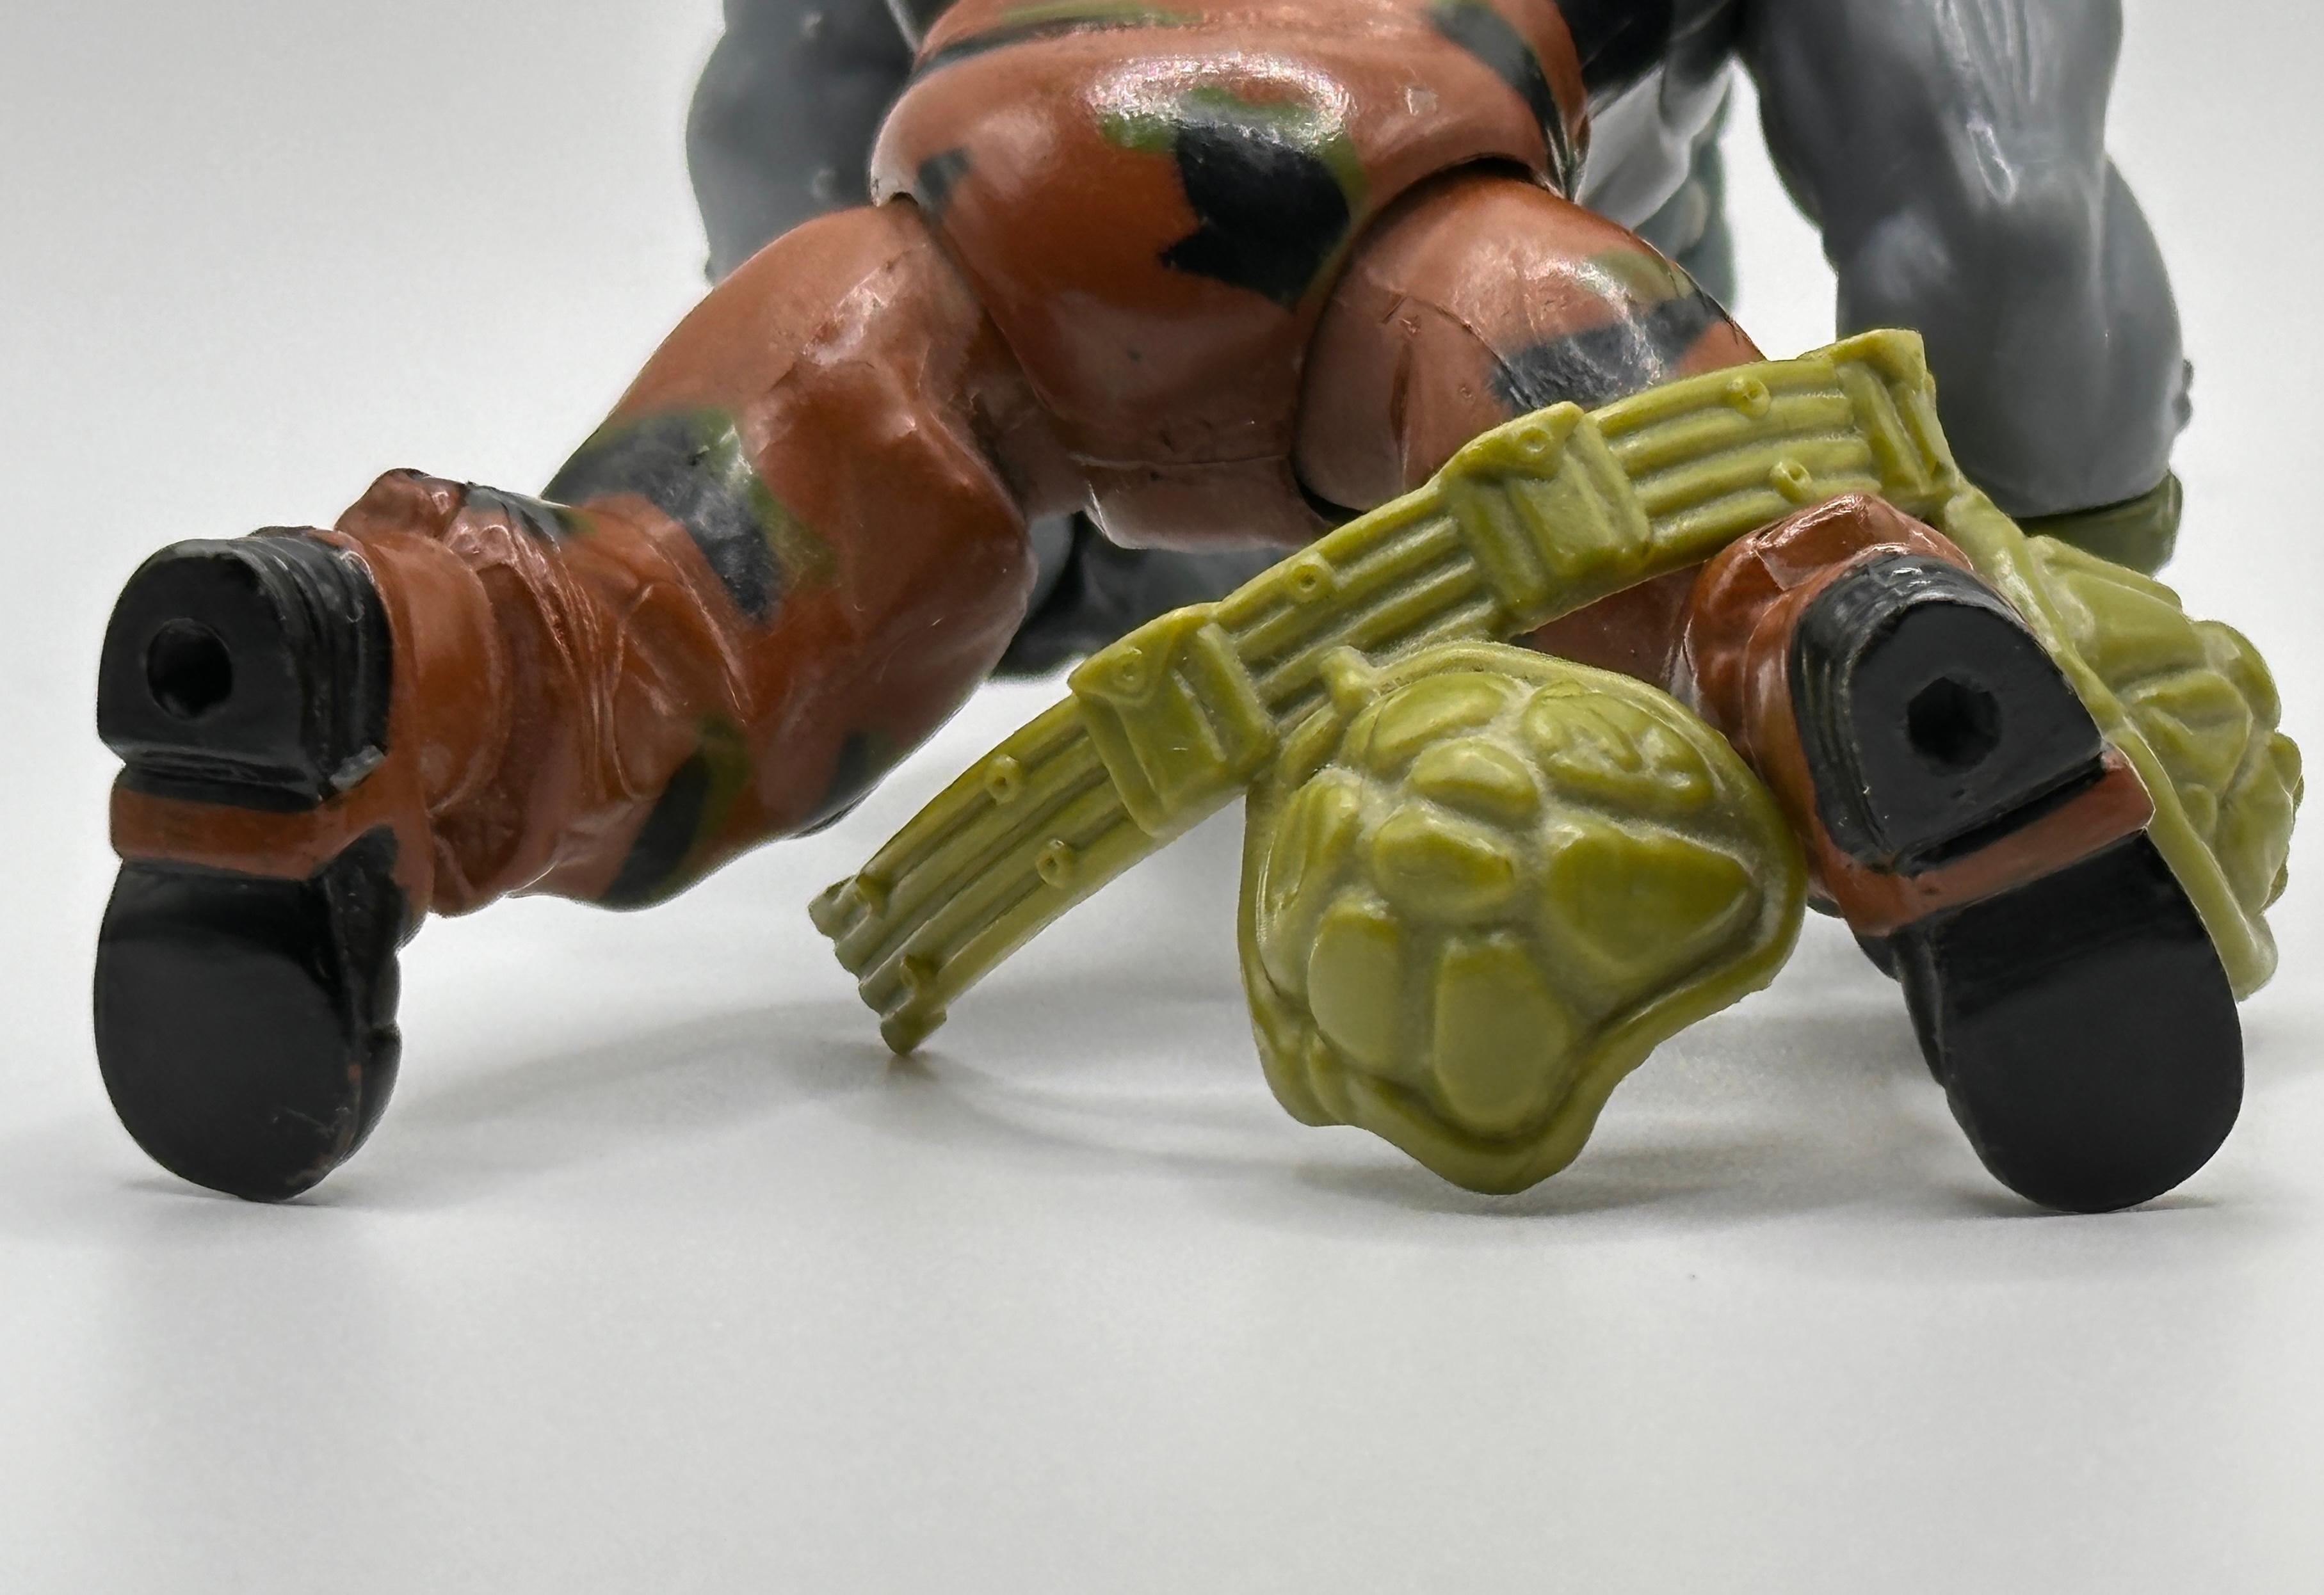 1988 TMNT/Teenage Mutant Ninja Turtles Rocksteady Action Figure